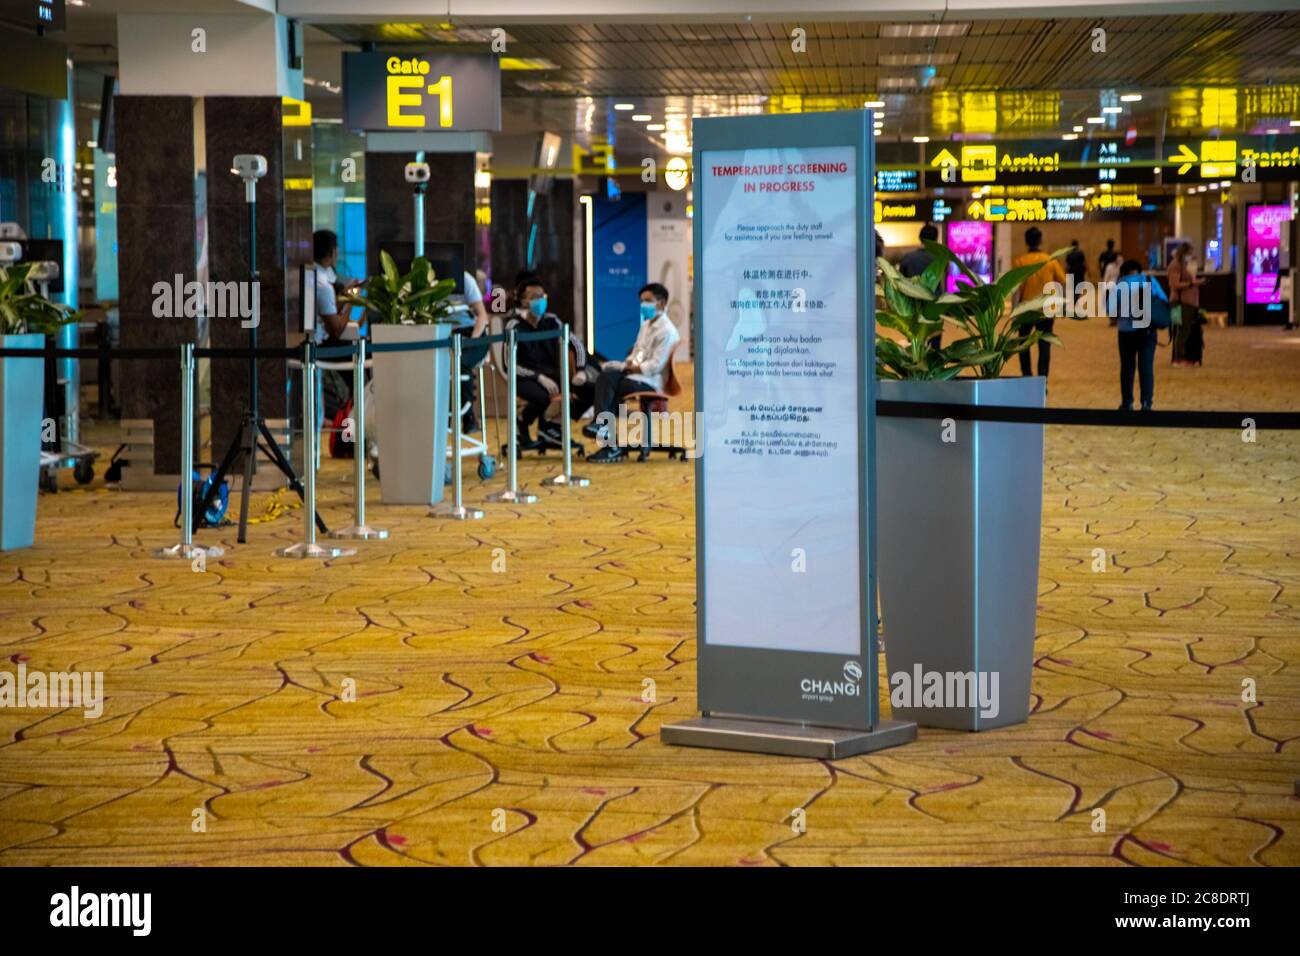 SINGAPUR - JULI 21. 2020: Temperaturregelung mit Wärmebildkamera im Passagierbereich des Terminals am Changi Airport. Gegenwirkung covid-19 Stockfoto